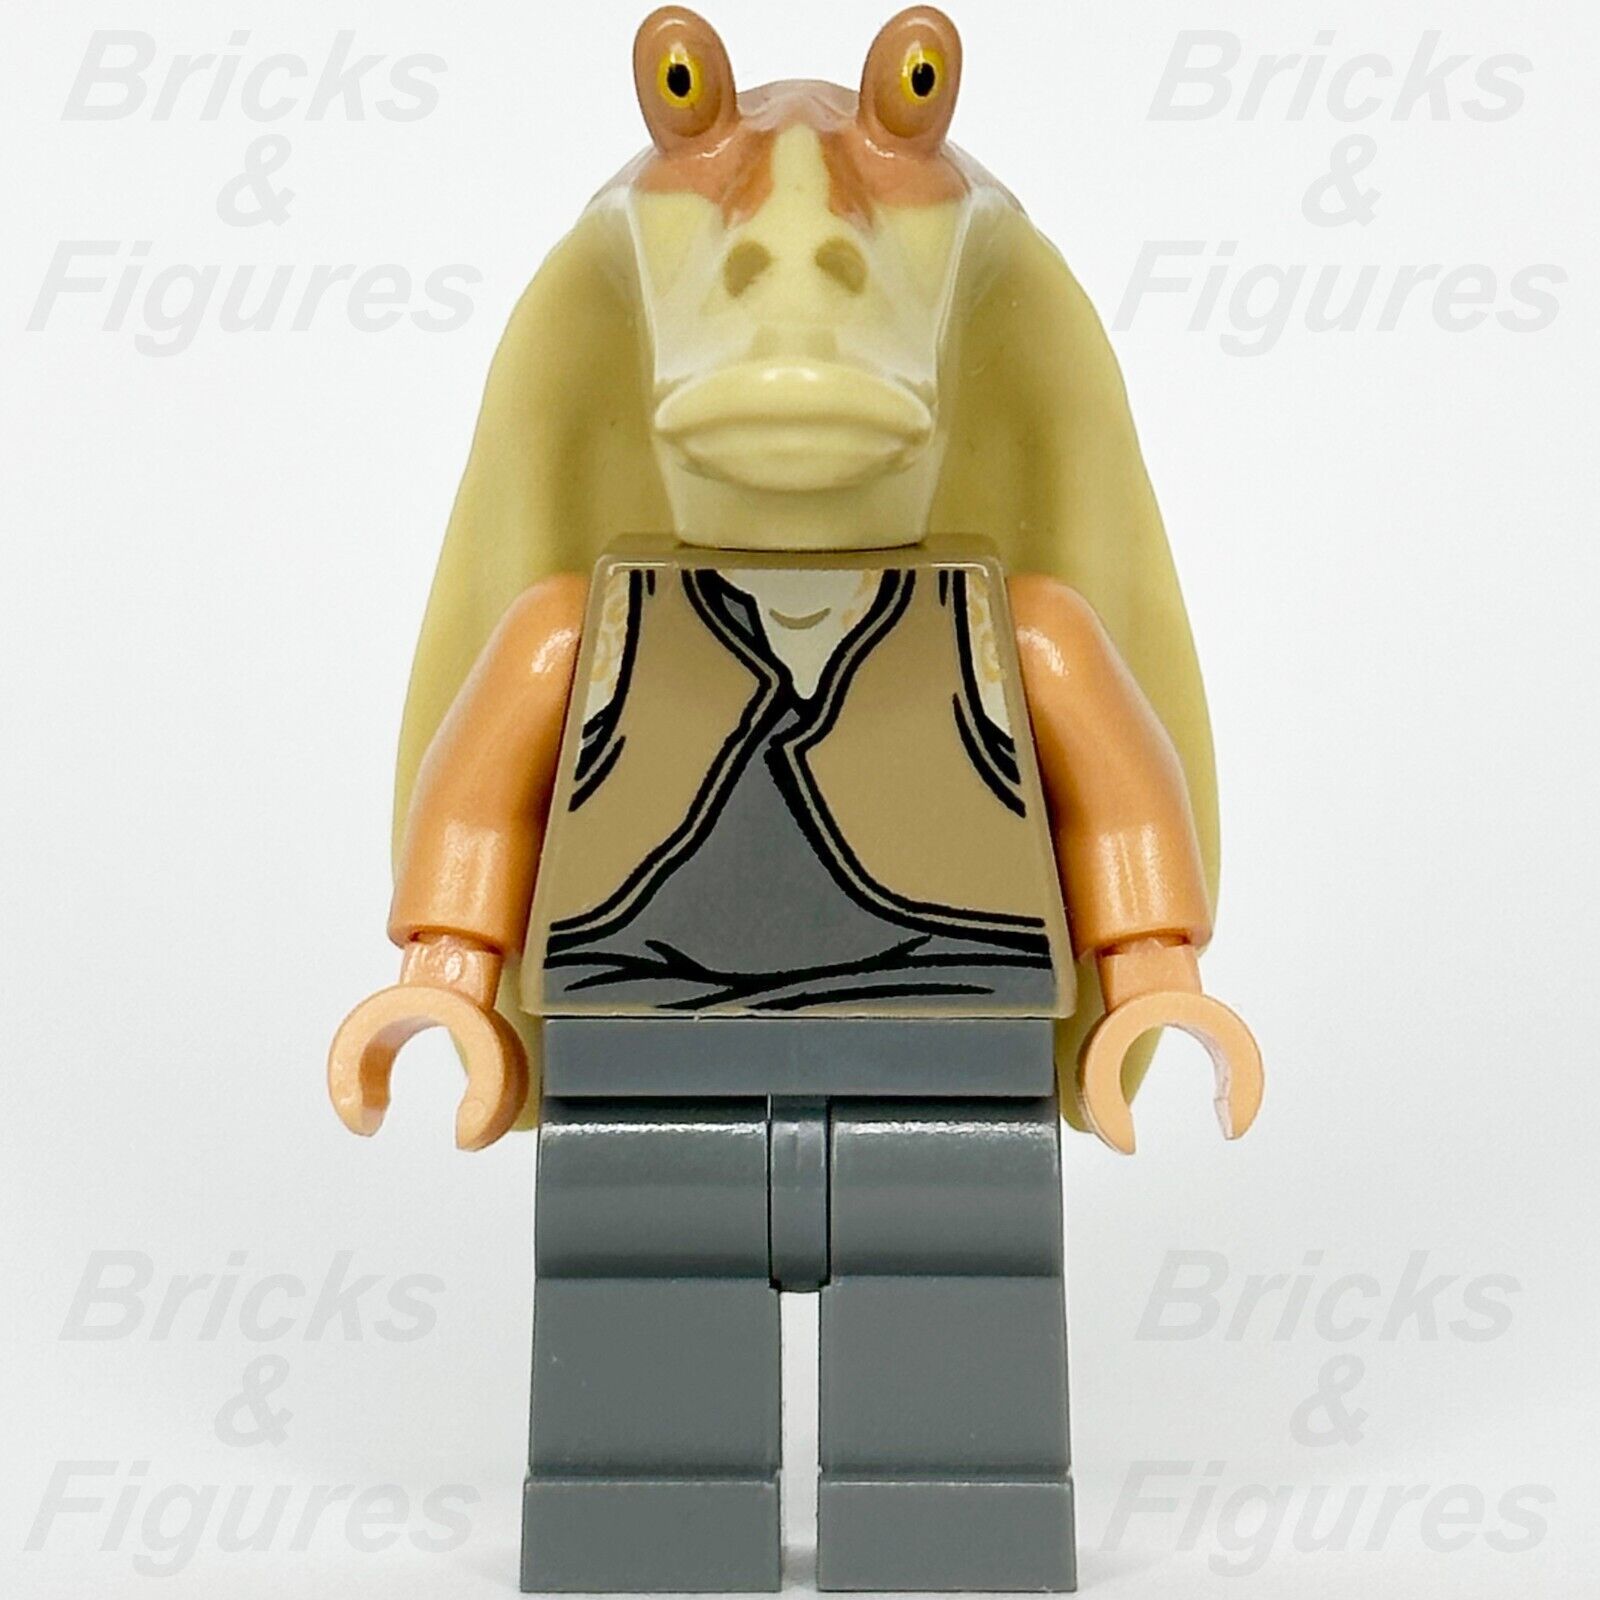 LEGO Star Wars Jar Jar Binks Minifigure Gungan General 75080 9499 7929 sw0301 2